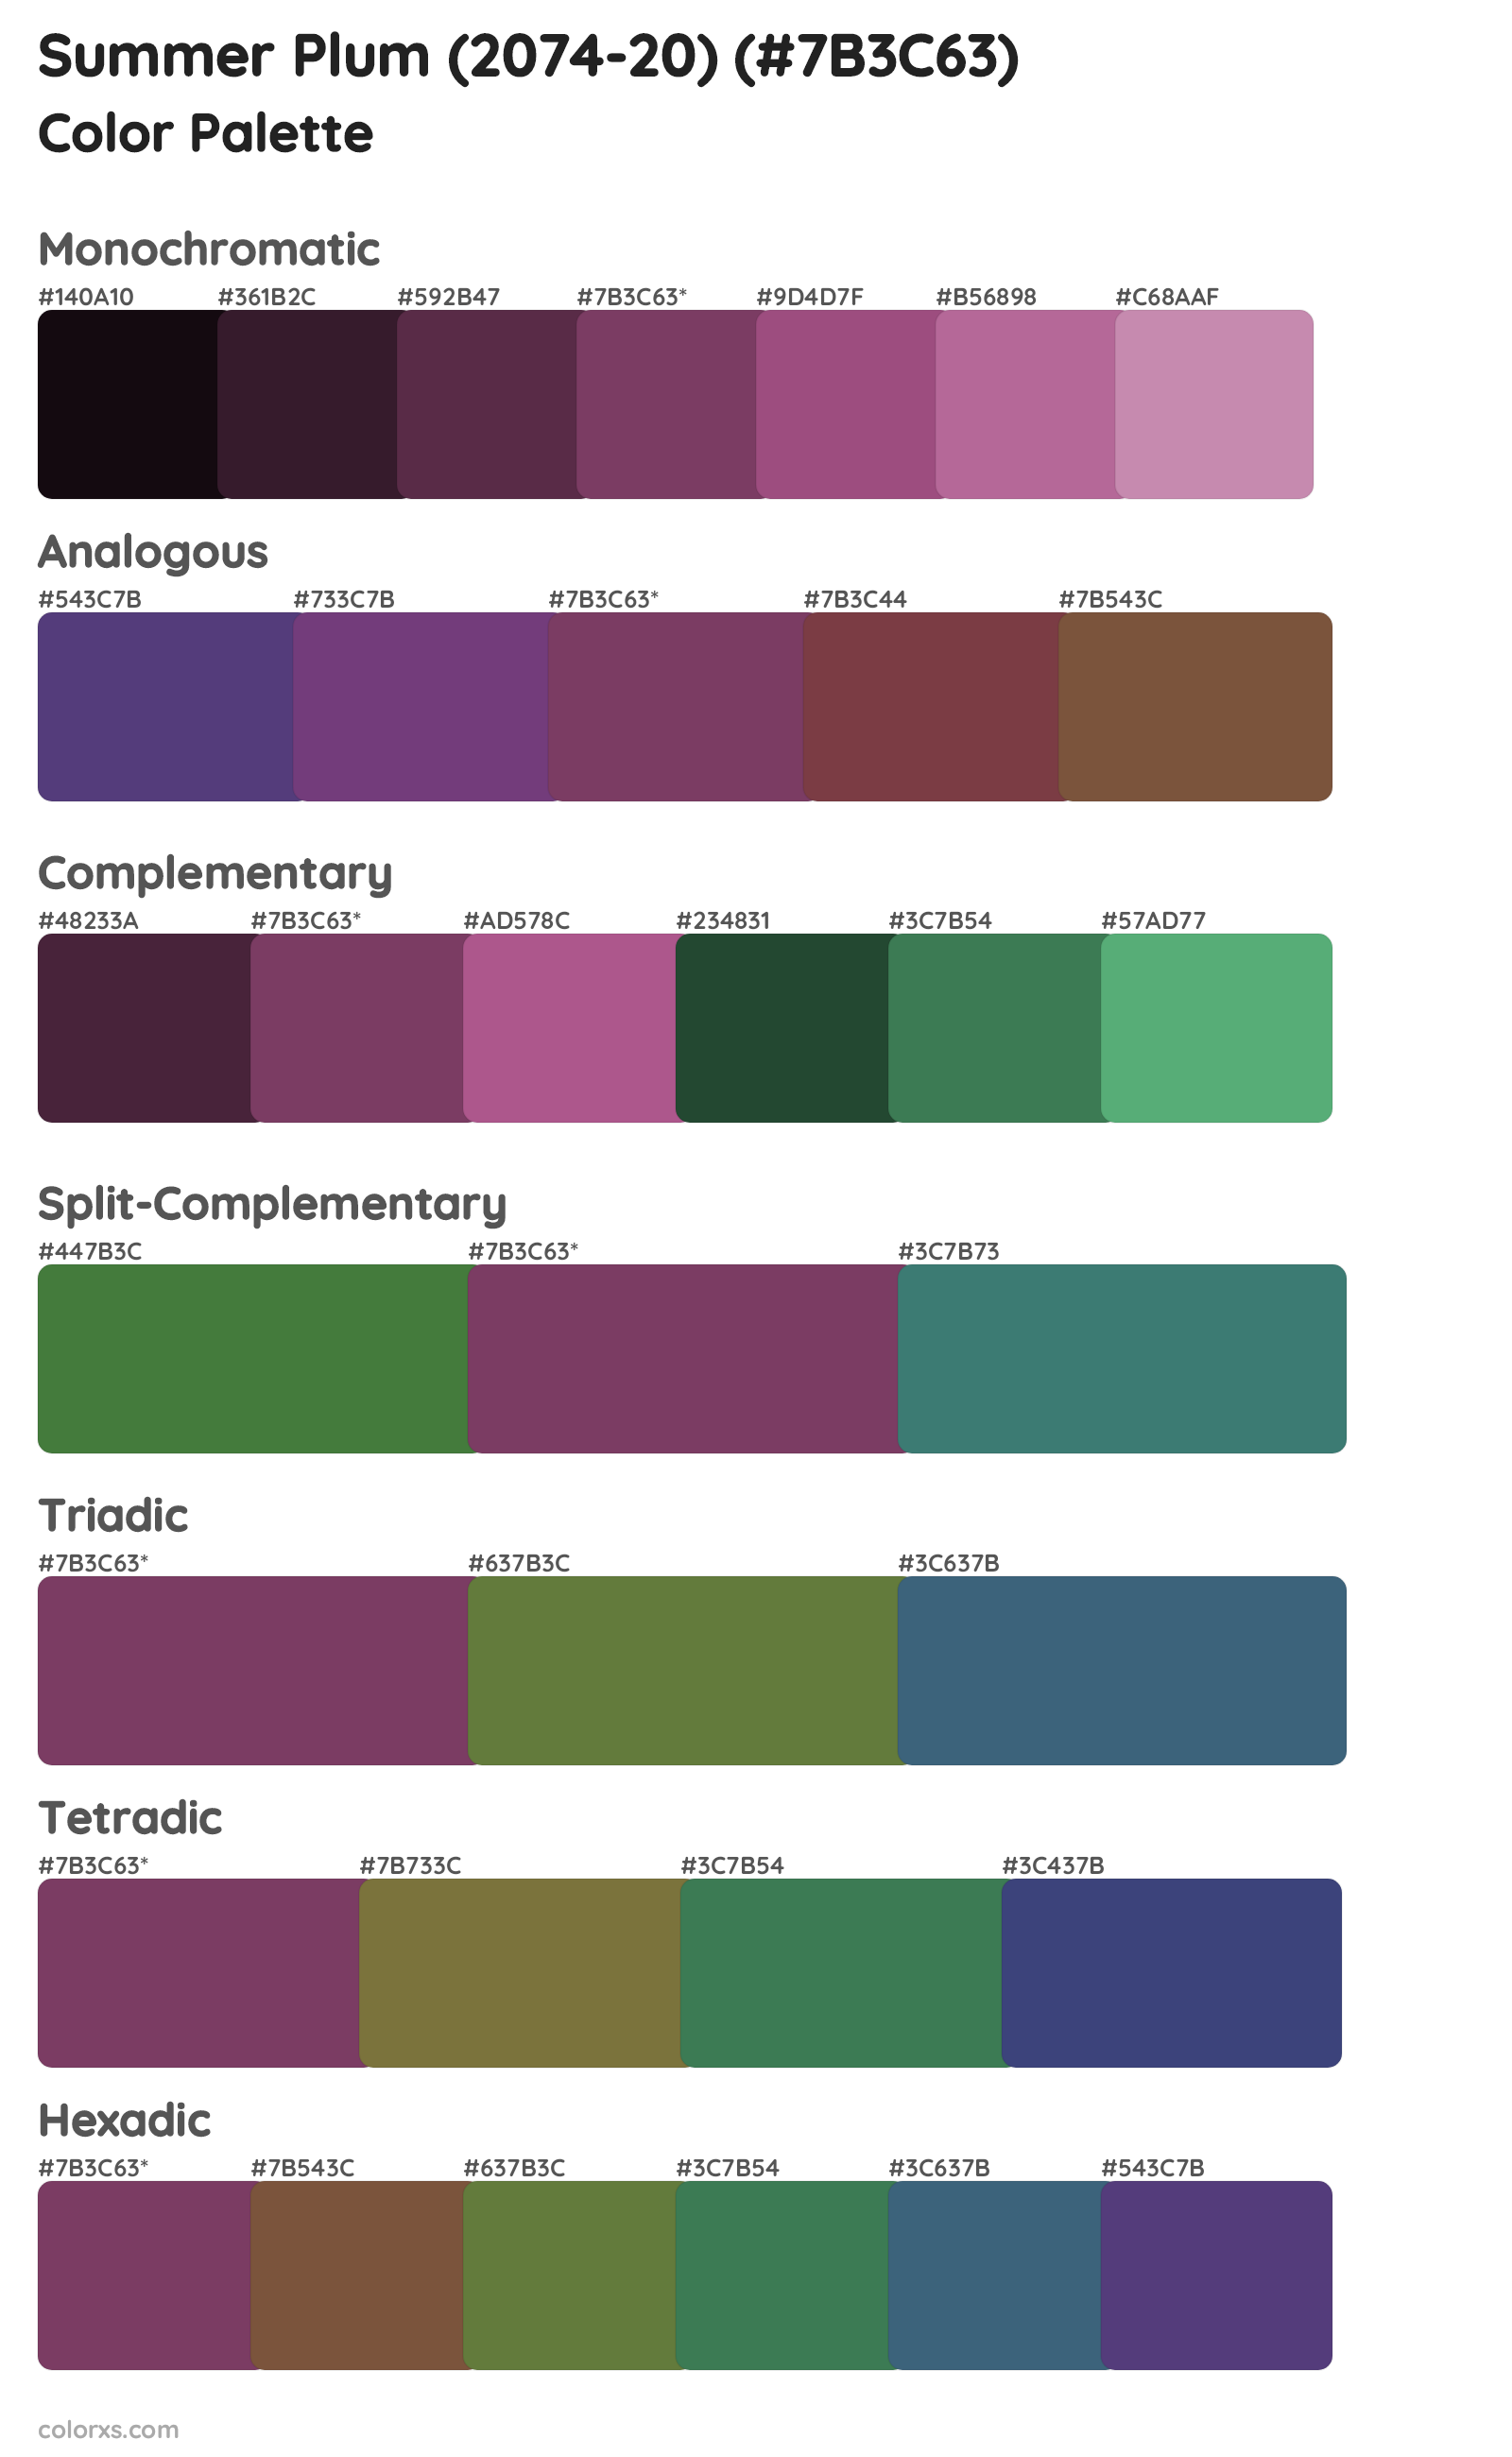 Summer Plum (2074-20) Color Scheme Palettes